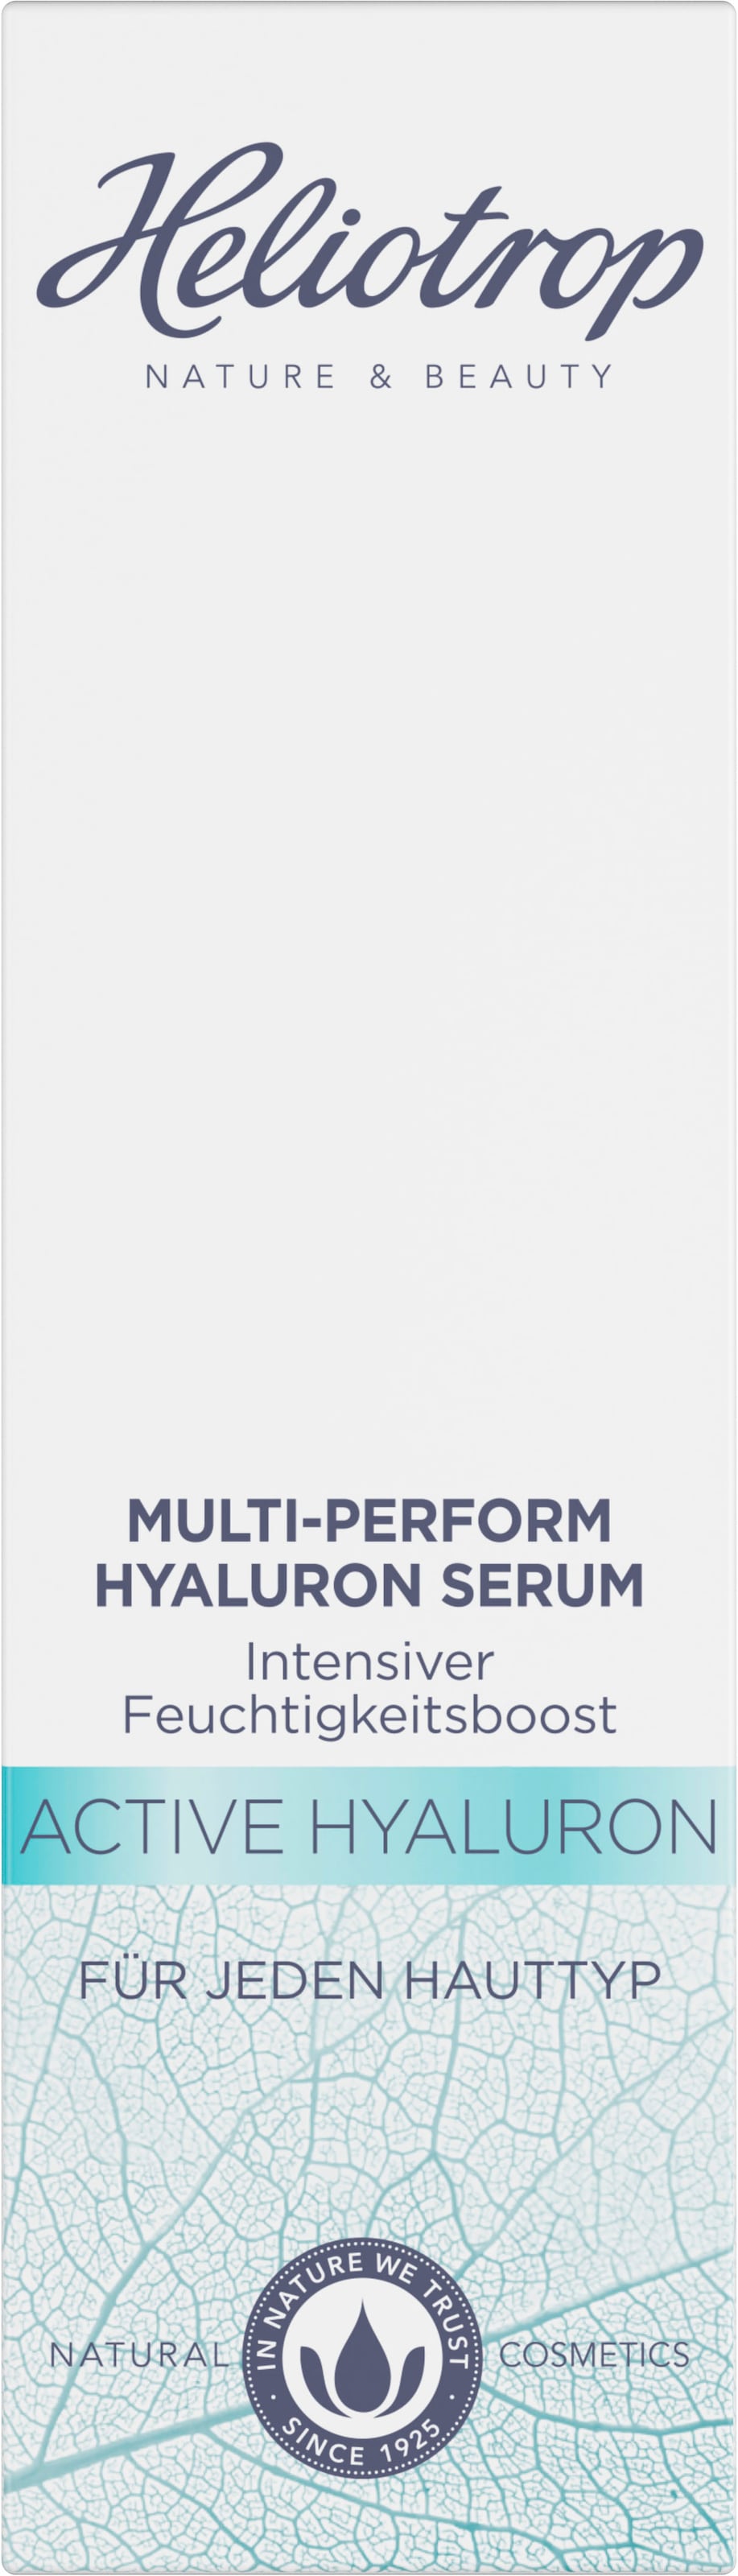 Hyaluron« BAUR HELIOTROP Gesichtsserum »Active | kaufen